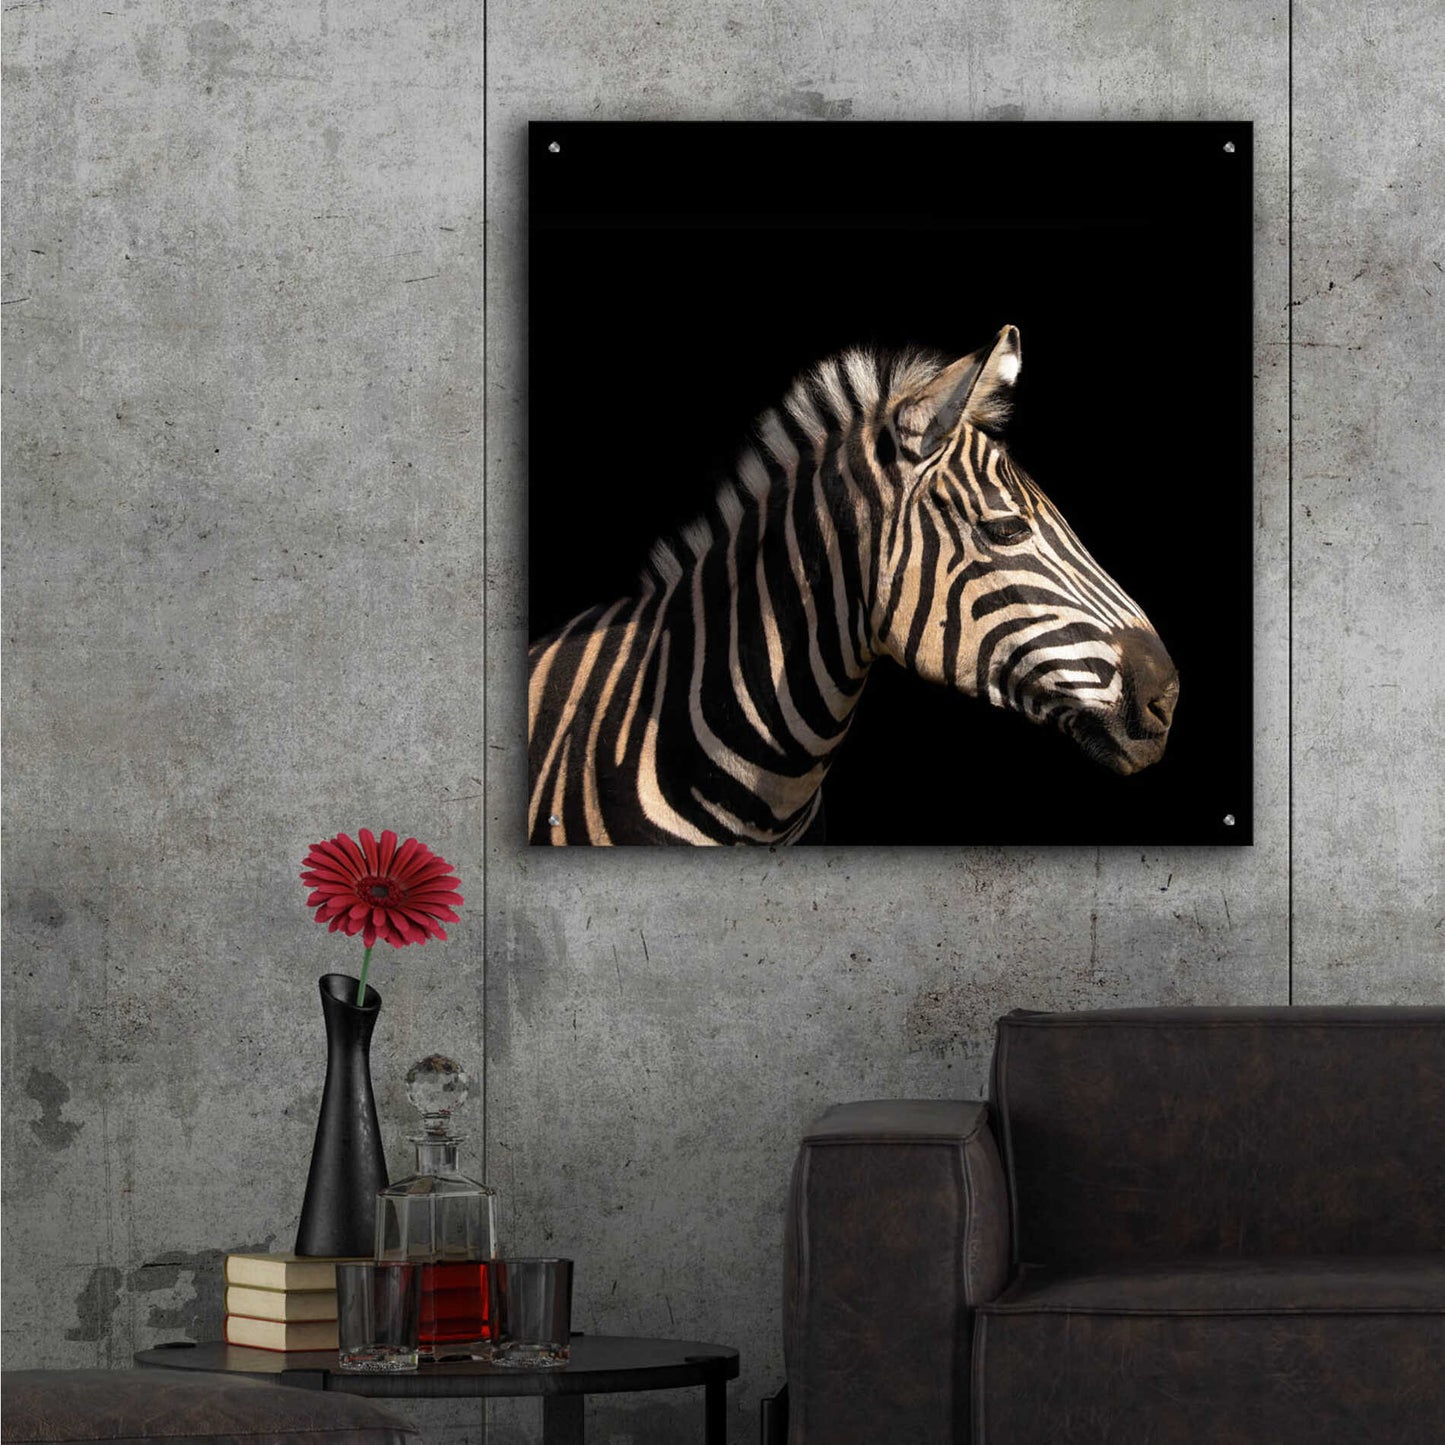 Epic Art 'Zebra' by Epic Portfolio Acrylic Glass Wall Art,36x36